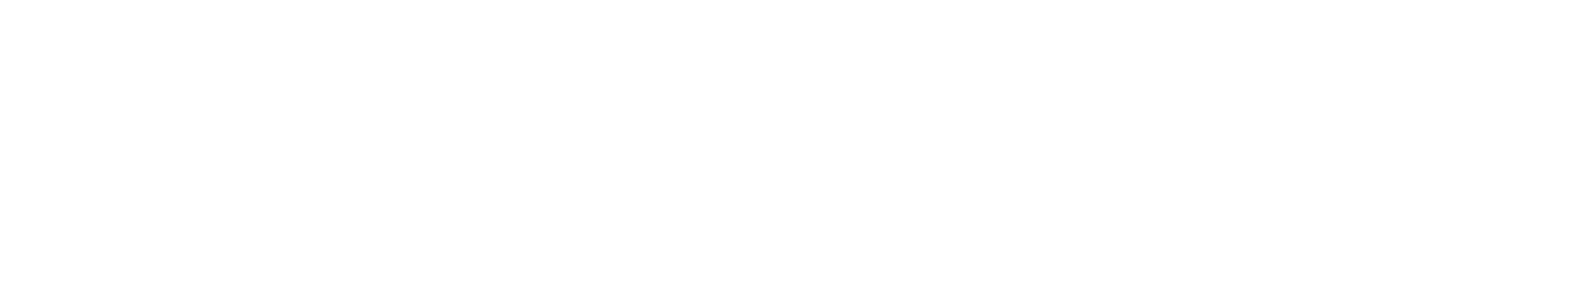 Vår Energi logo large for dark backgrounds (transparent PNG)